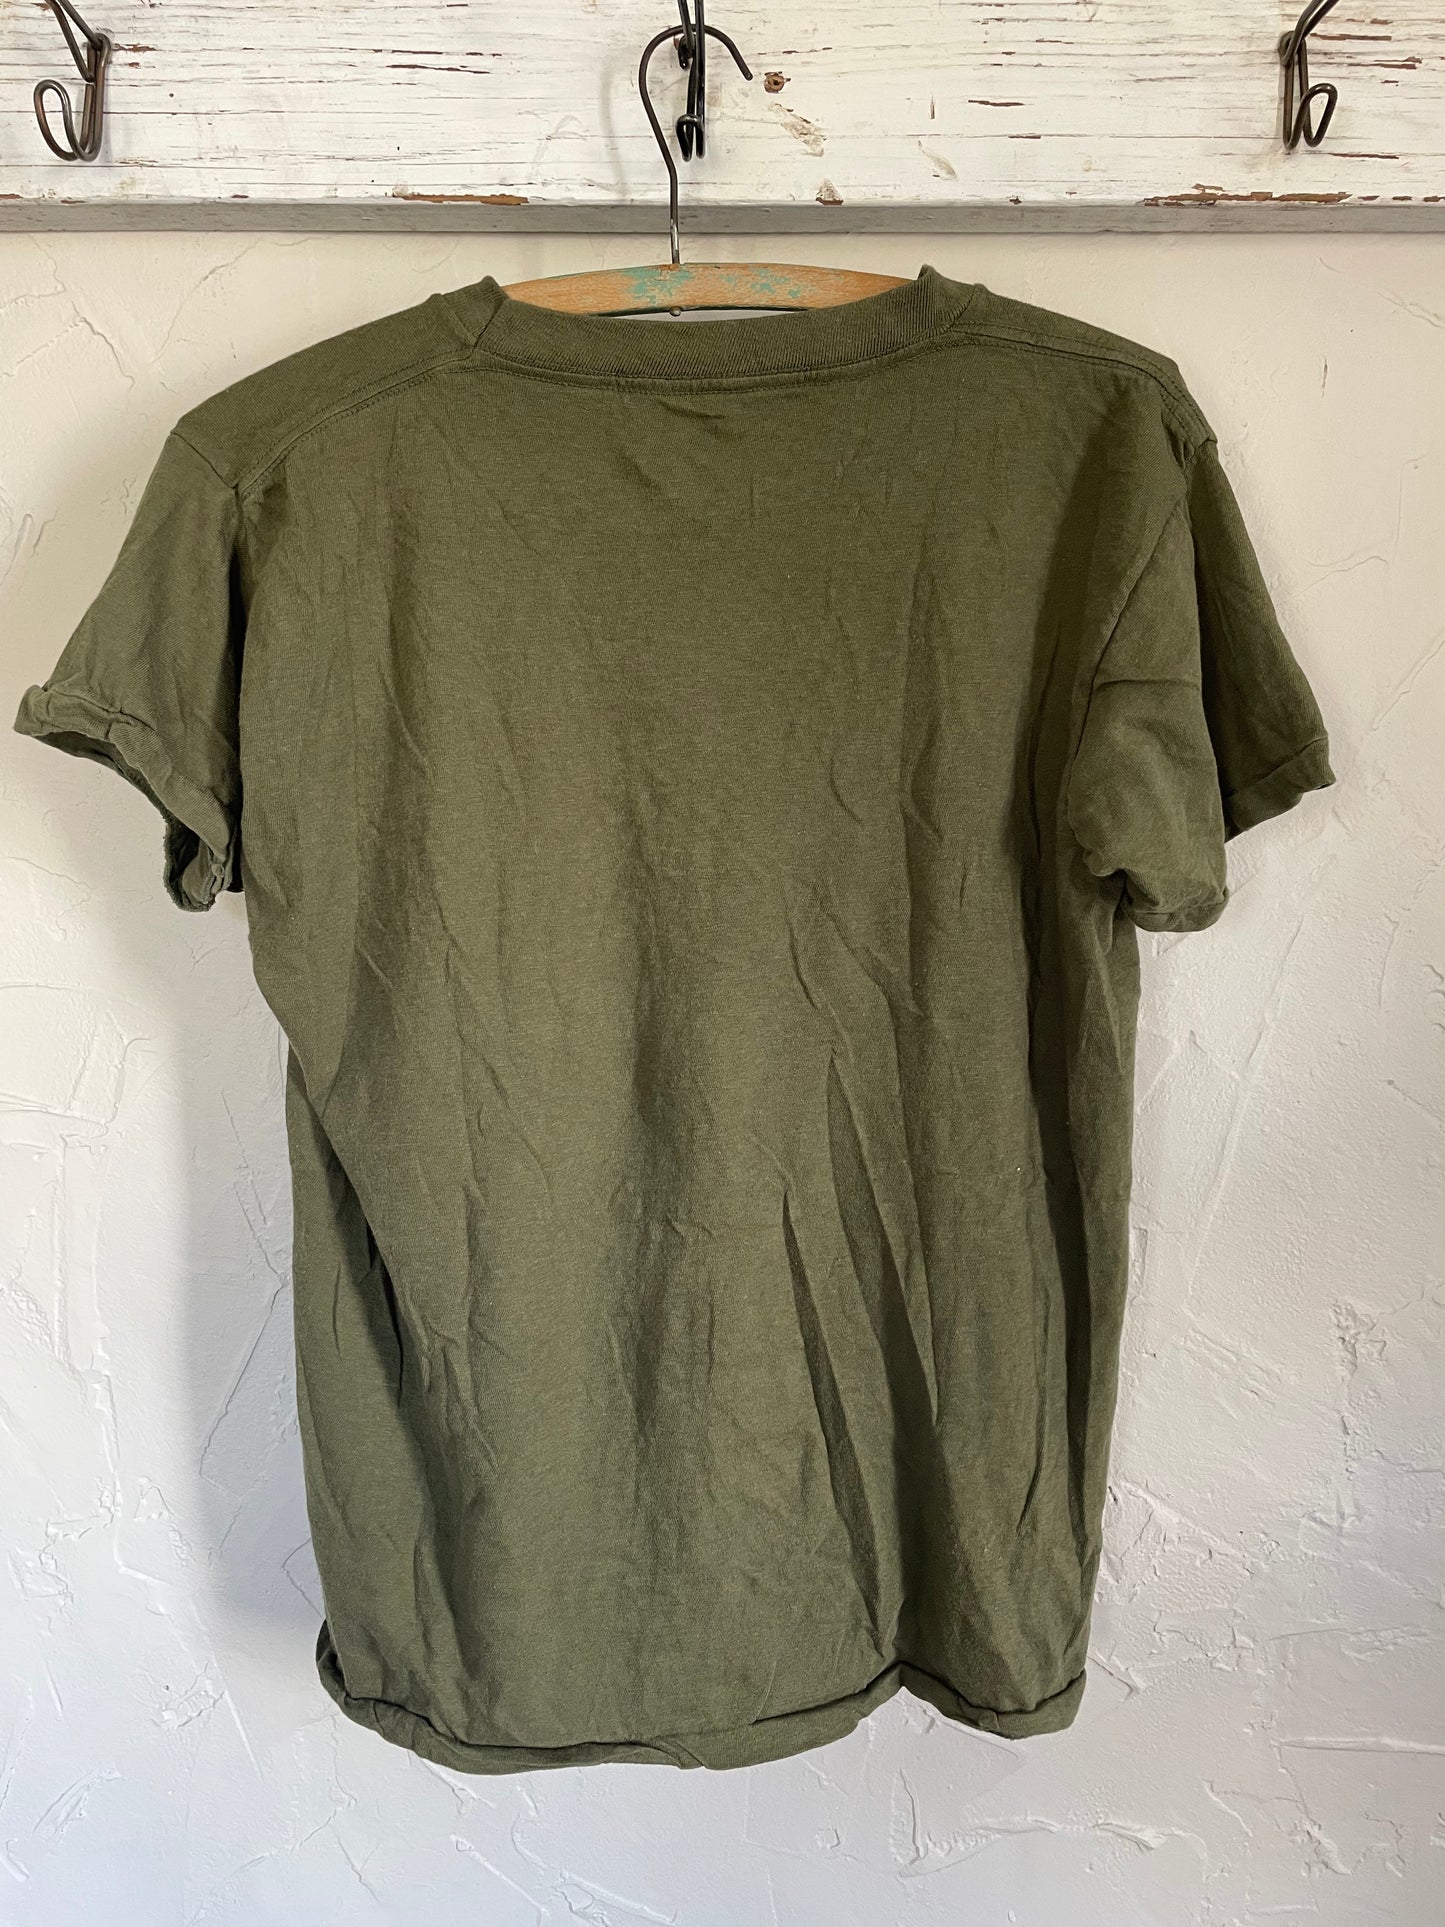 80s Green Military Undershirt